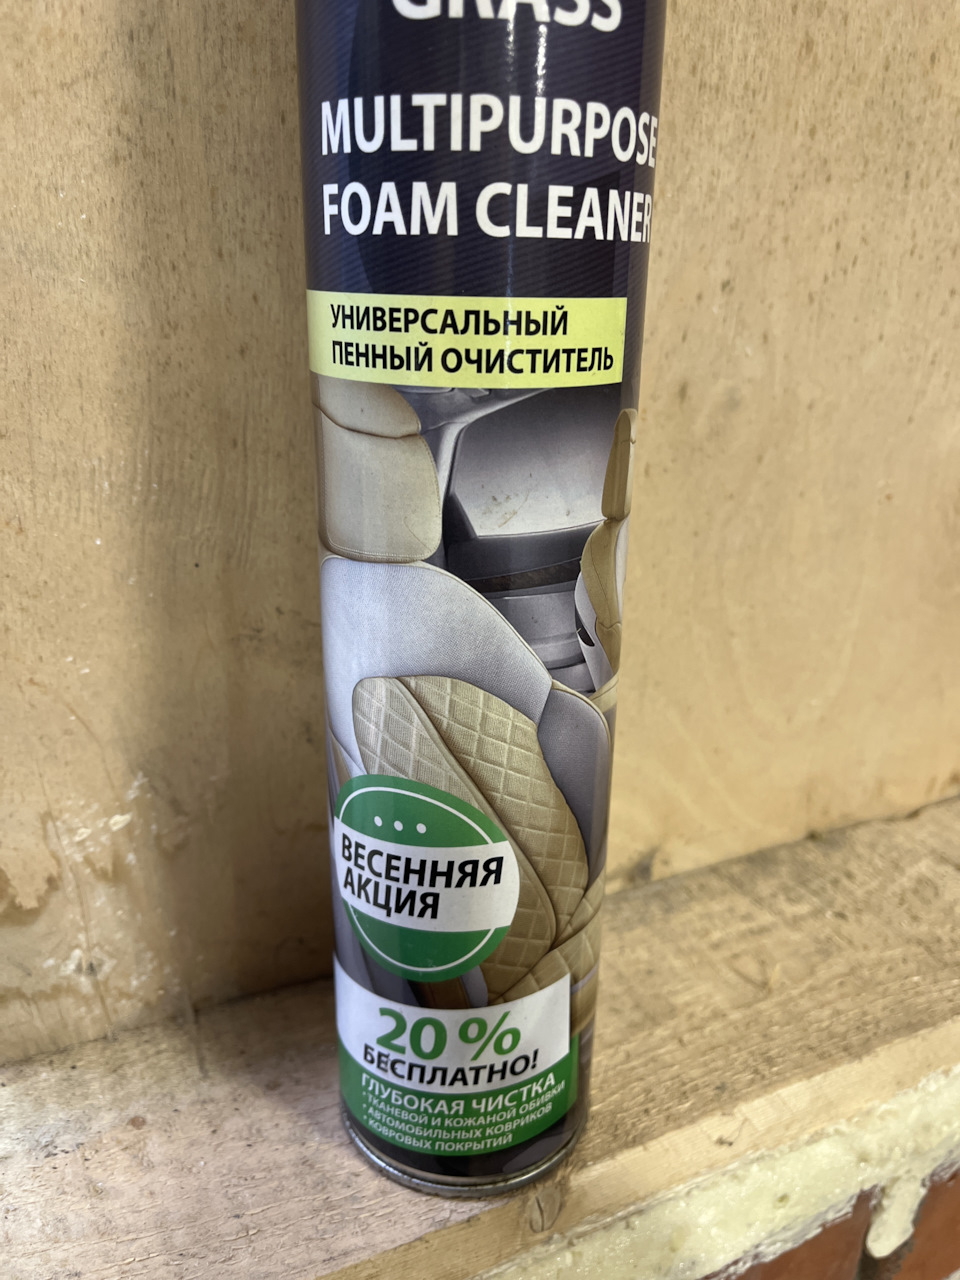 Универсальный пенный очиститель «Multipurpose Foam Cleaner», 750 мл. Пенный очиститель салона автомобиля grass. 7 Win универсальный очиститель пенный. Пенный очиститель пластика grass. Кстати купить